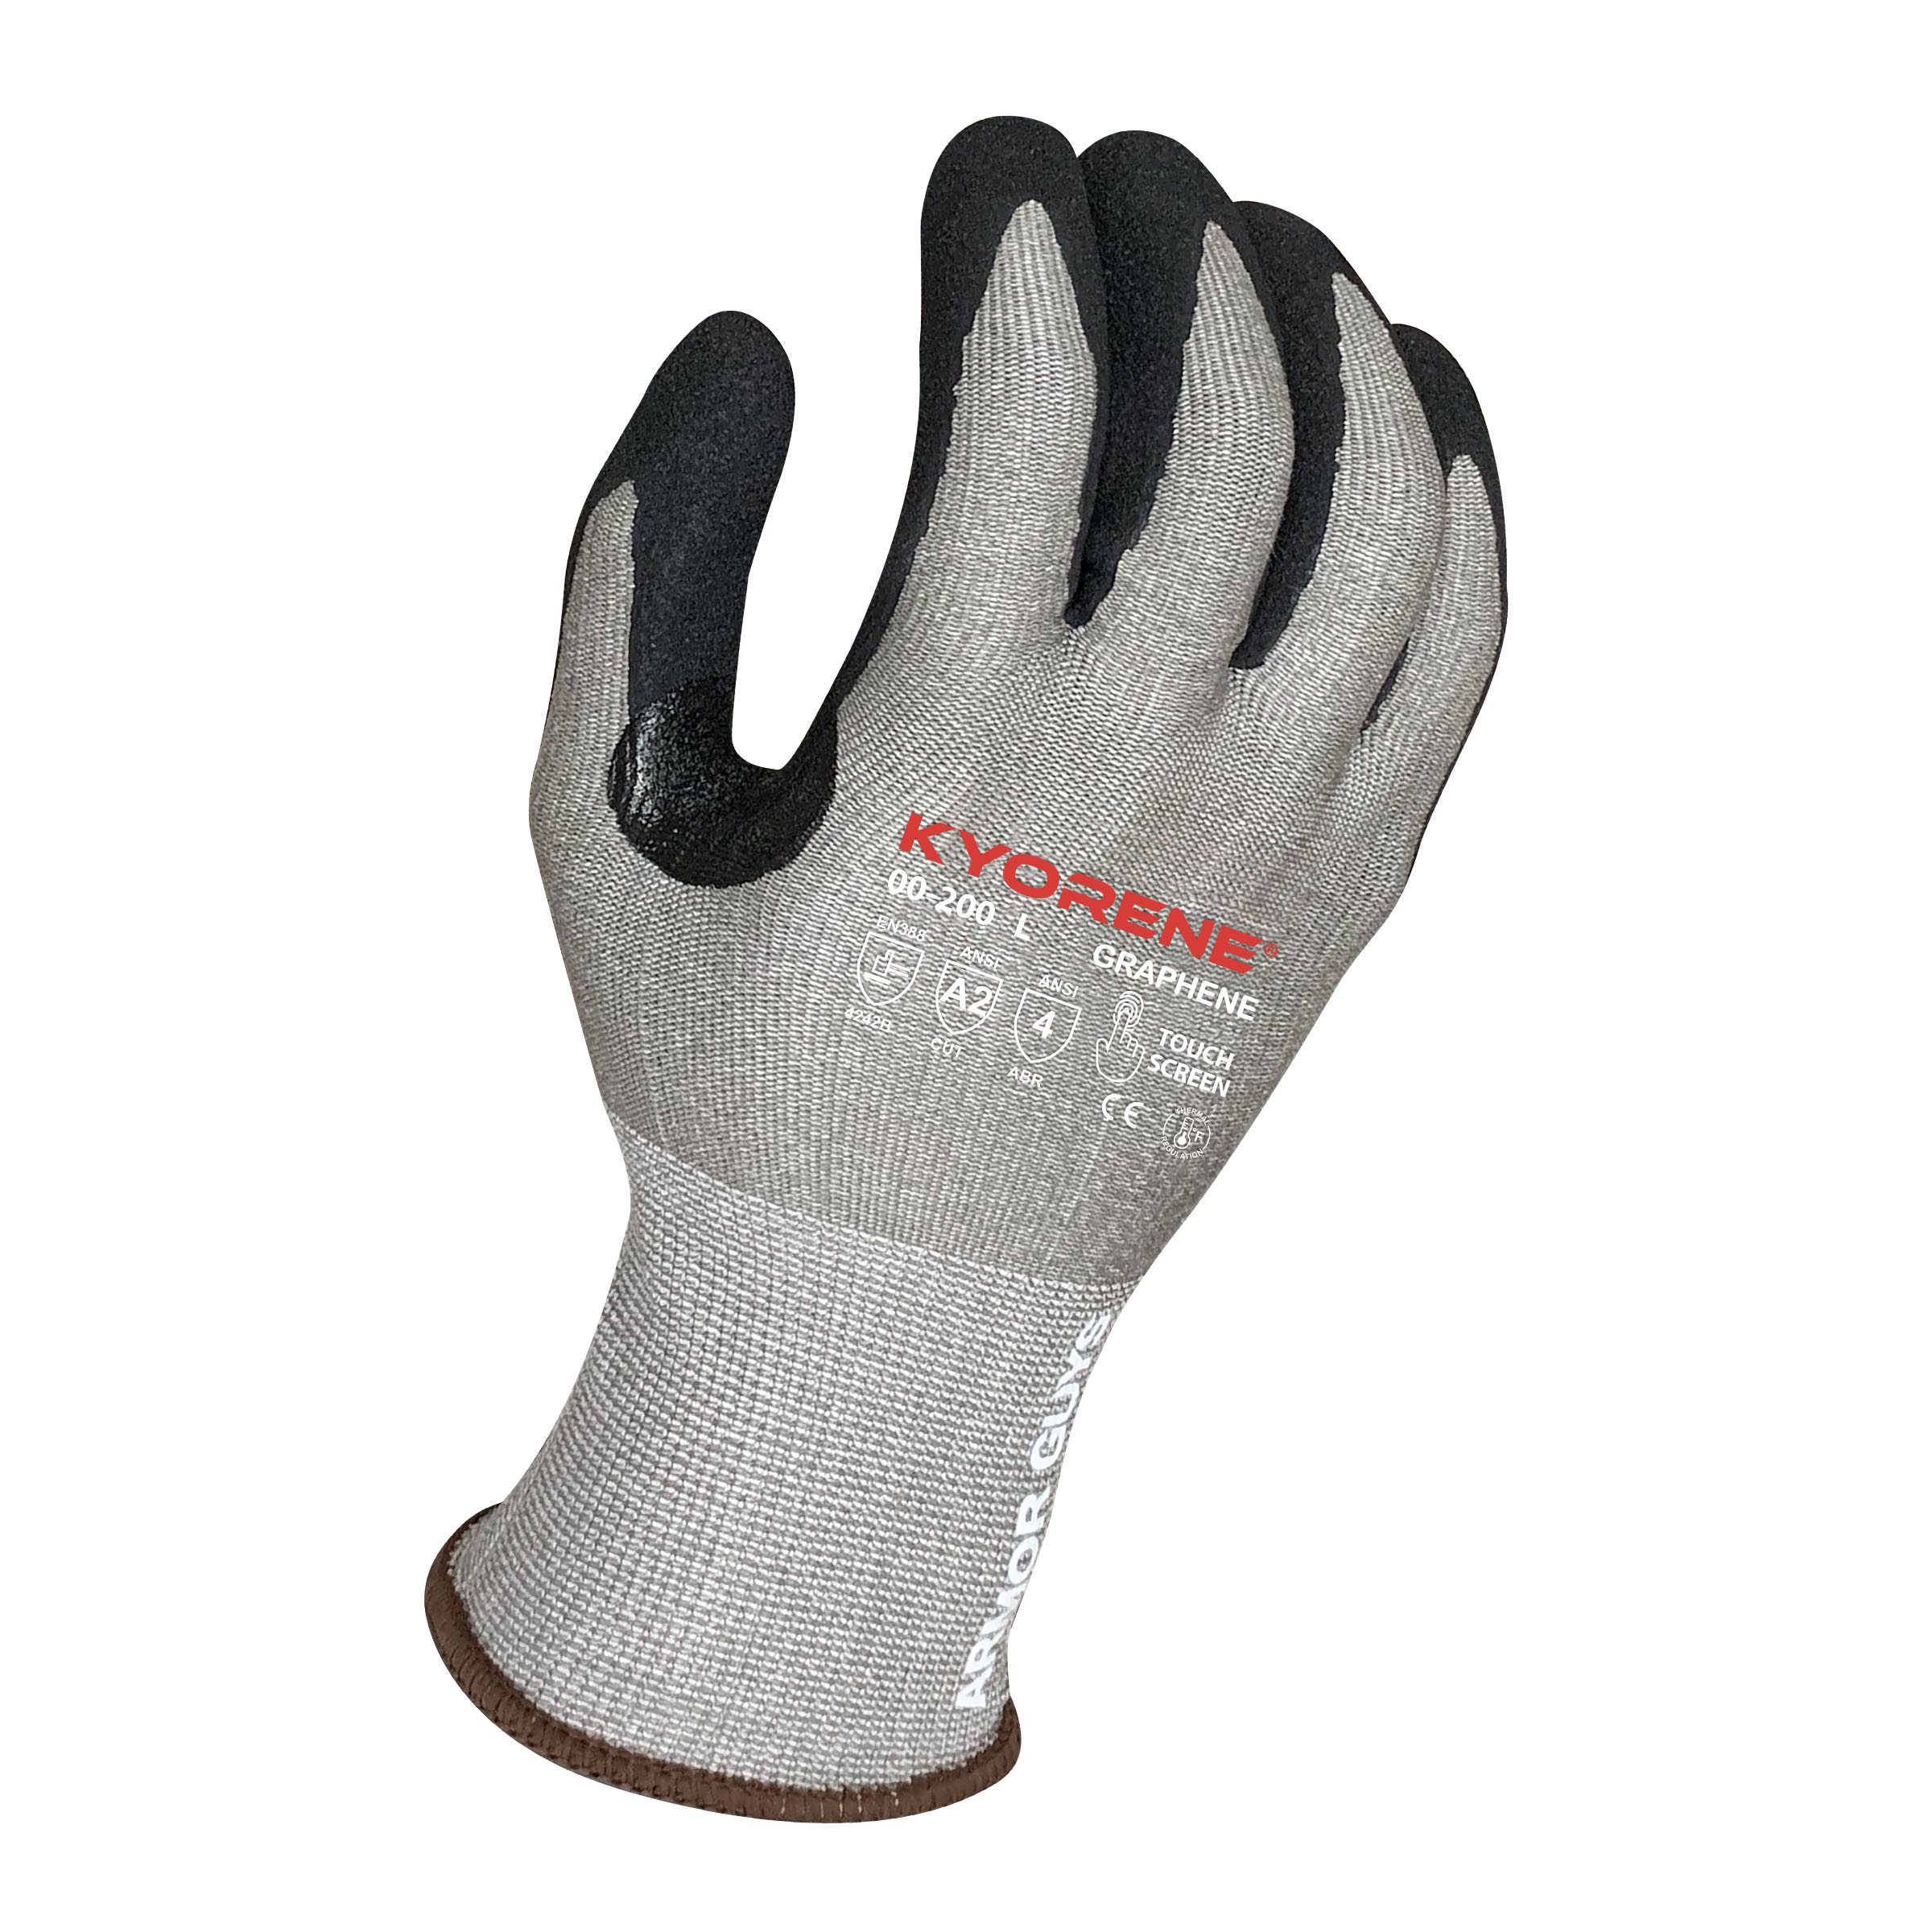 Armor Guys Kyorene® Gloves